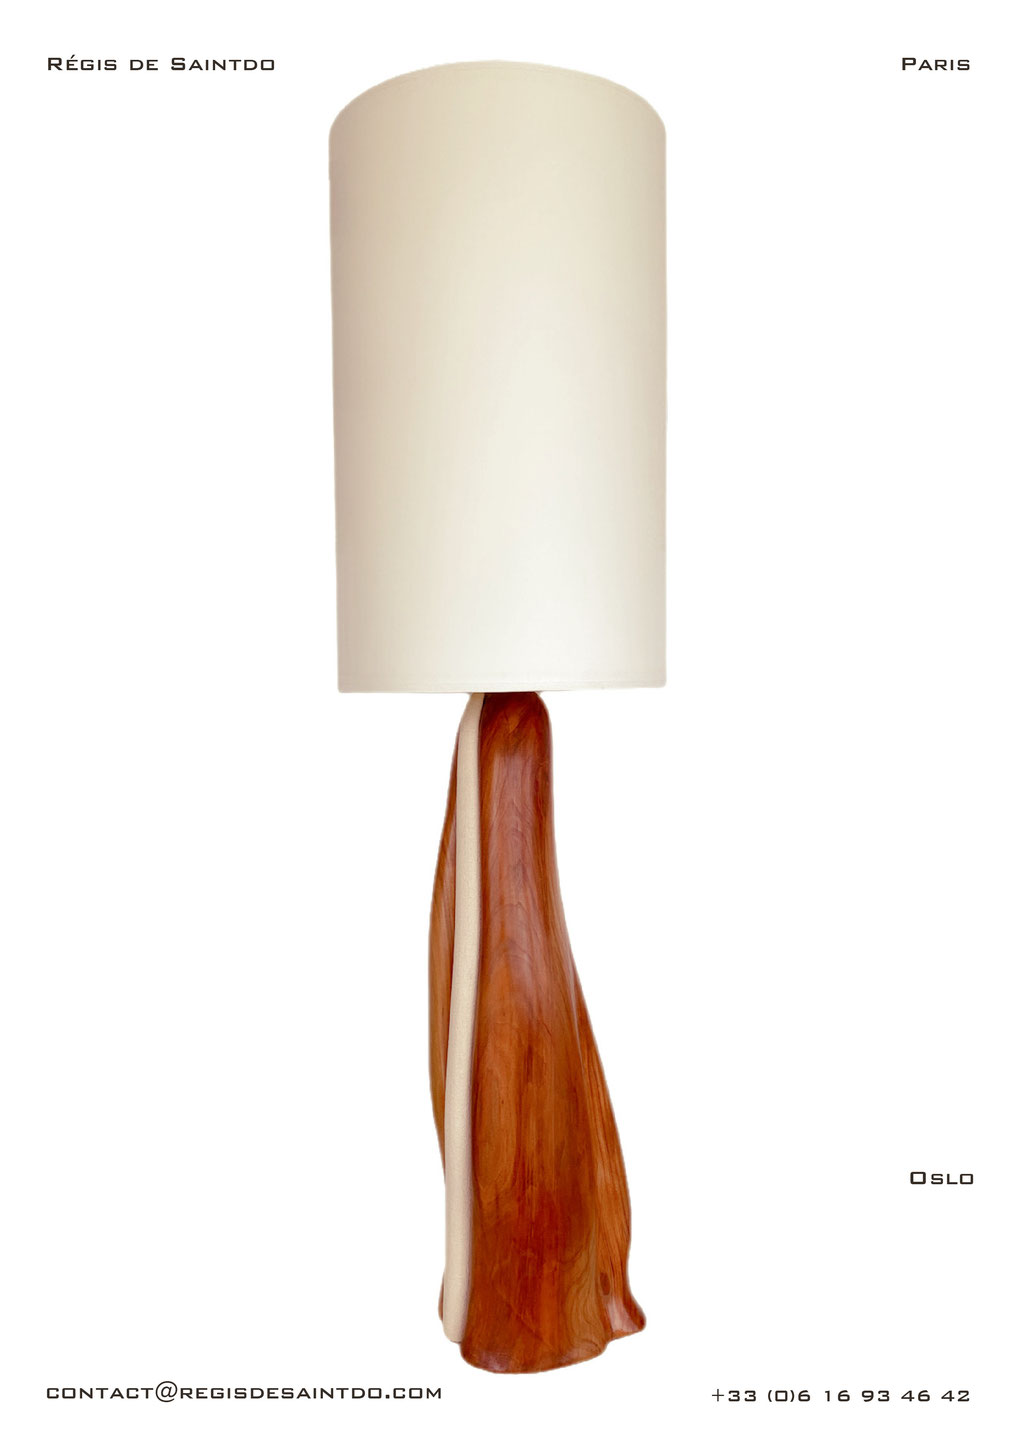 Lampe Oslo-céramique blanche chamotte-Bois de cerisier-fait main @Régis de Saintdo